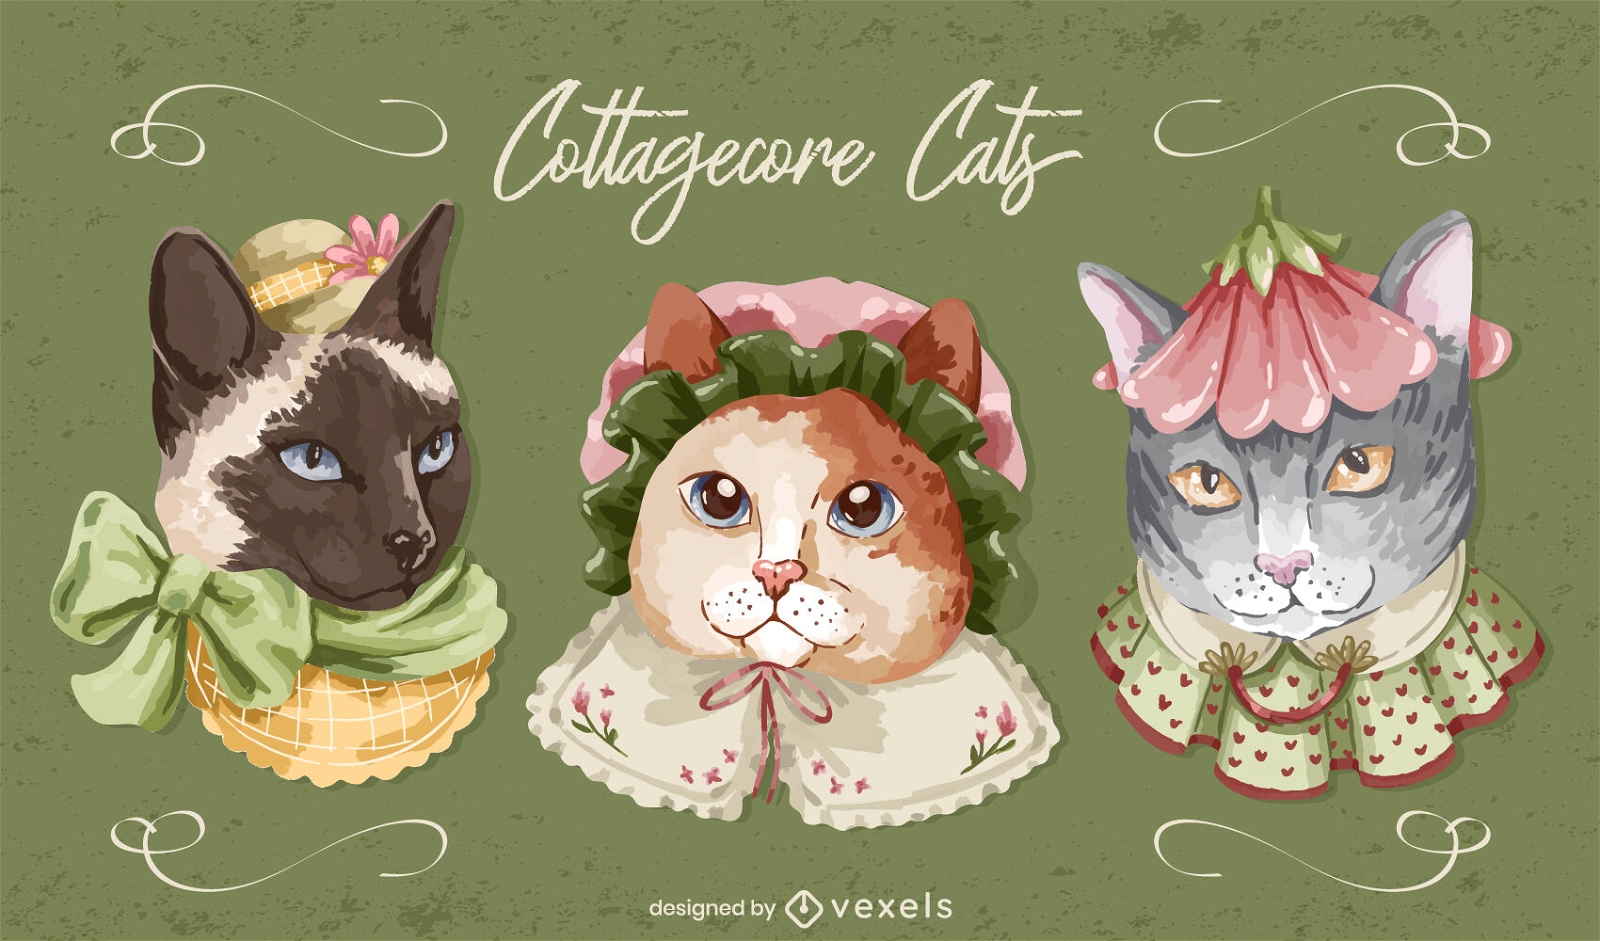 Niedliche Kätzchen-Cottagecore-Tiere-Set